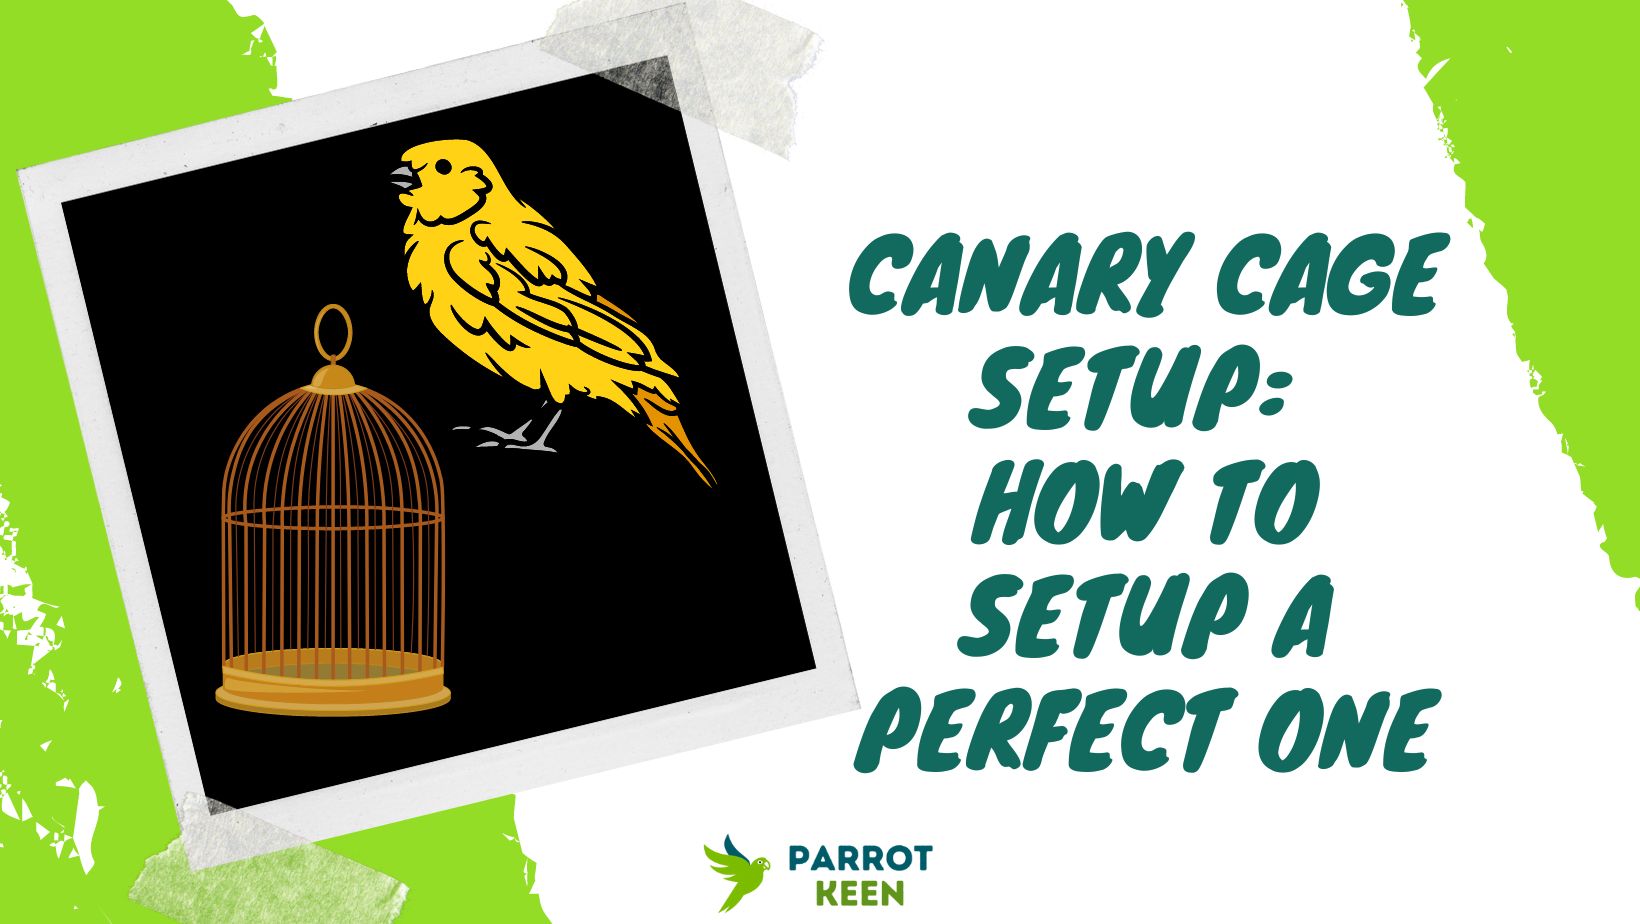 Canary cage setup